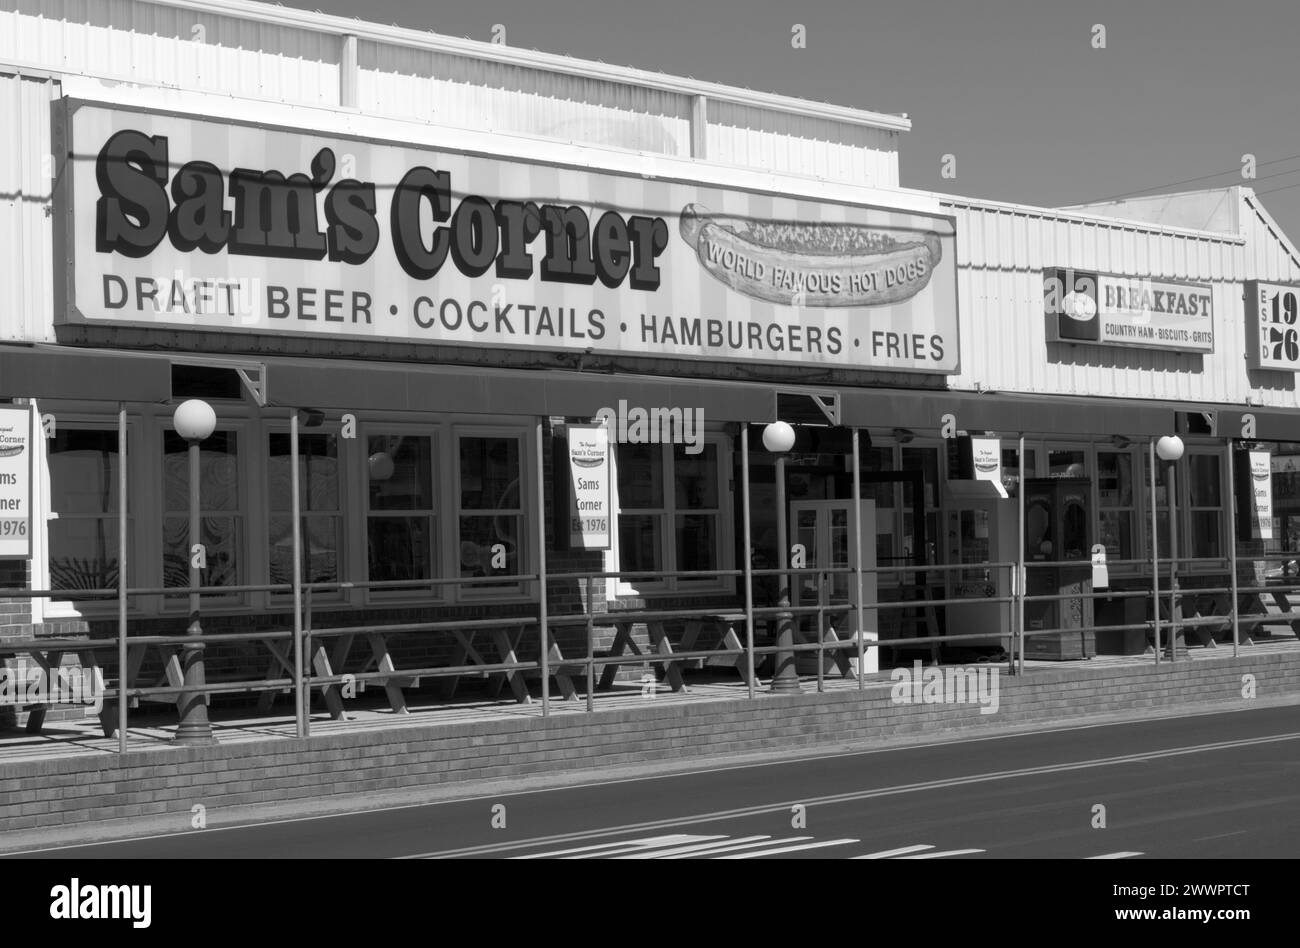 Foto de stock del icónico restaurante Sam's Corner cerca de Myrtle Beach, Carolina del Sur, EE.UU. Foto de stock